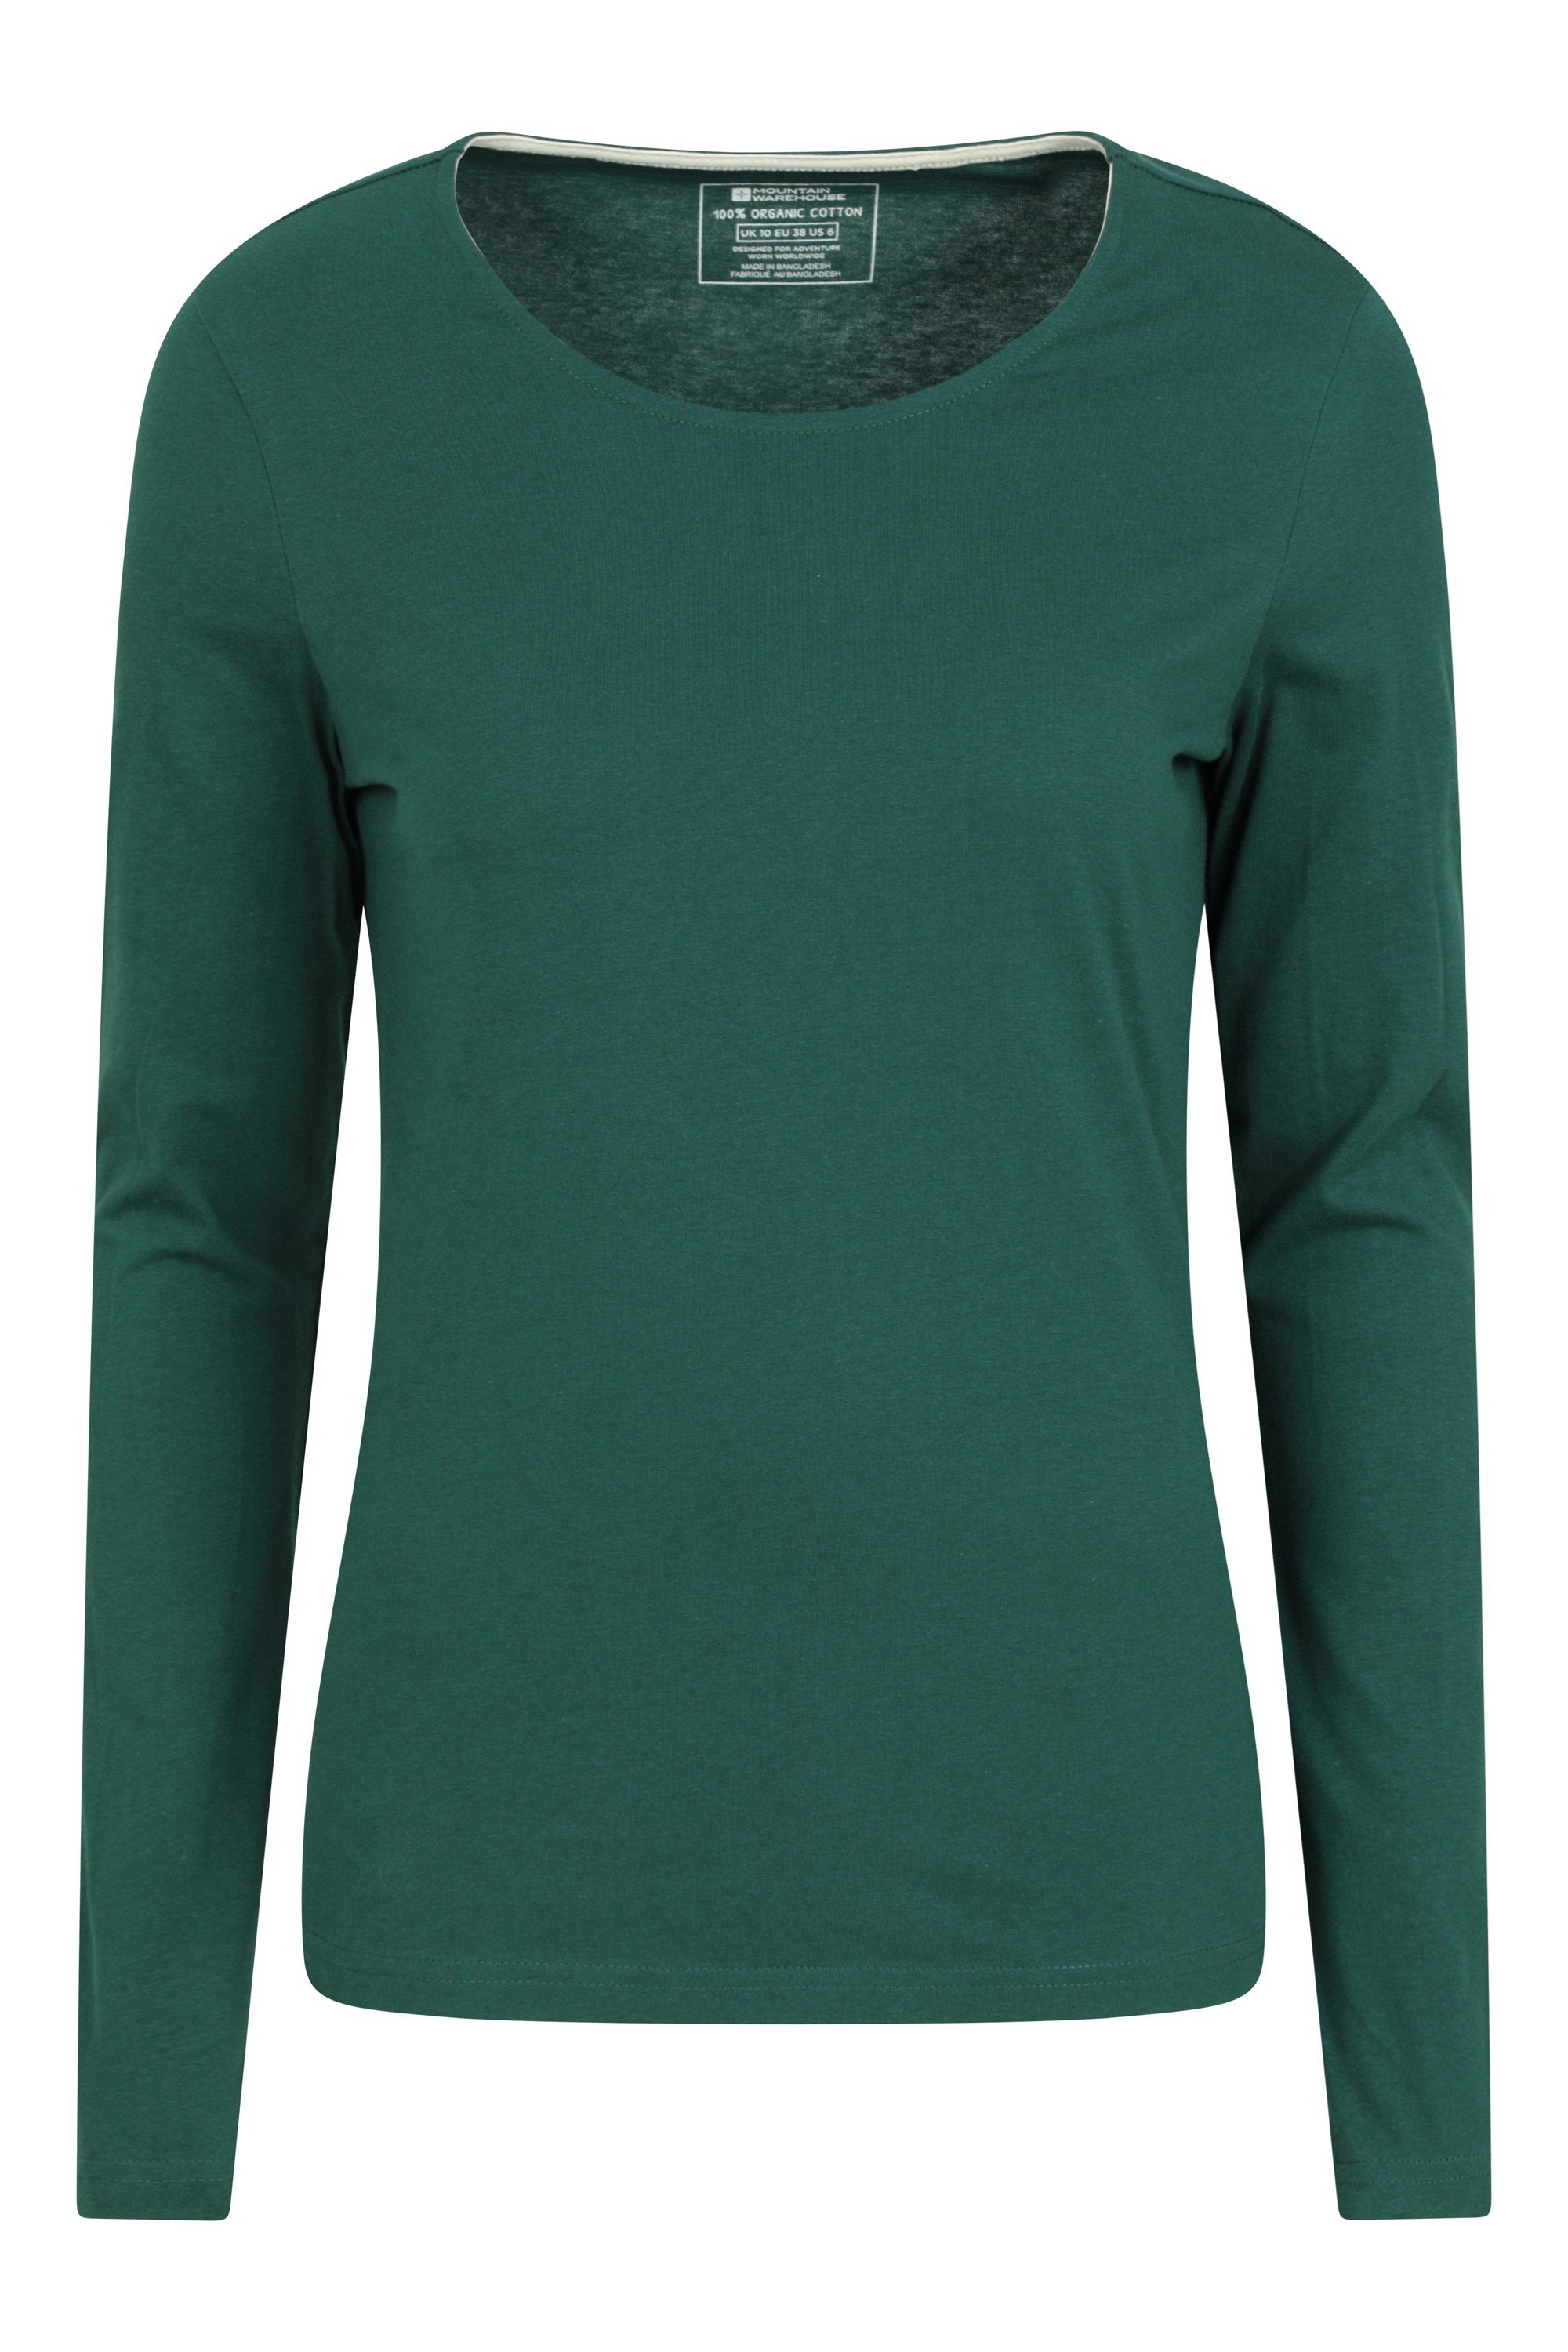 Eden damski organiczny t-shirt z okrągłym dekoltem - Green